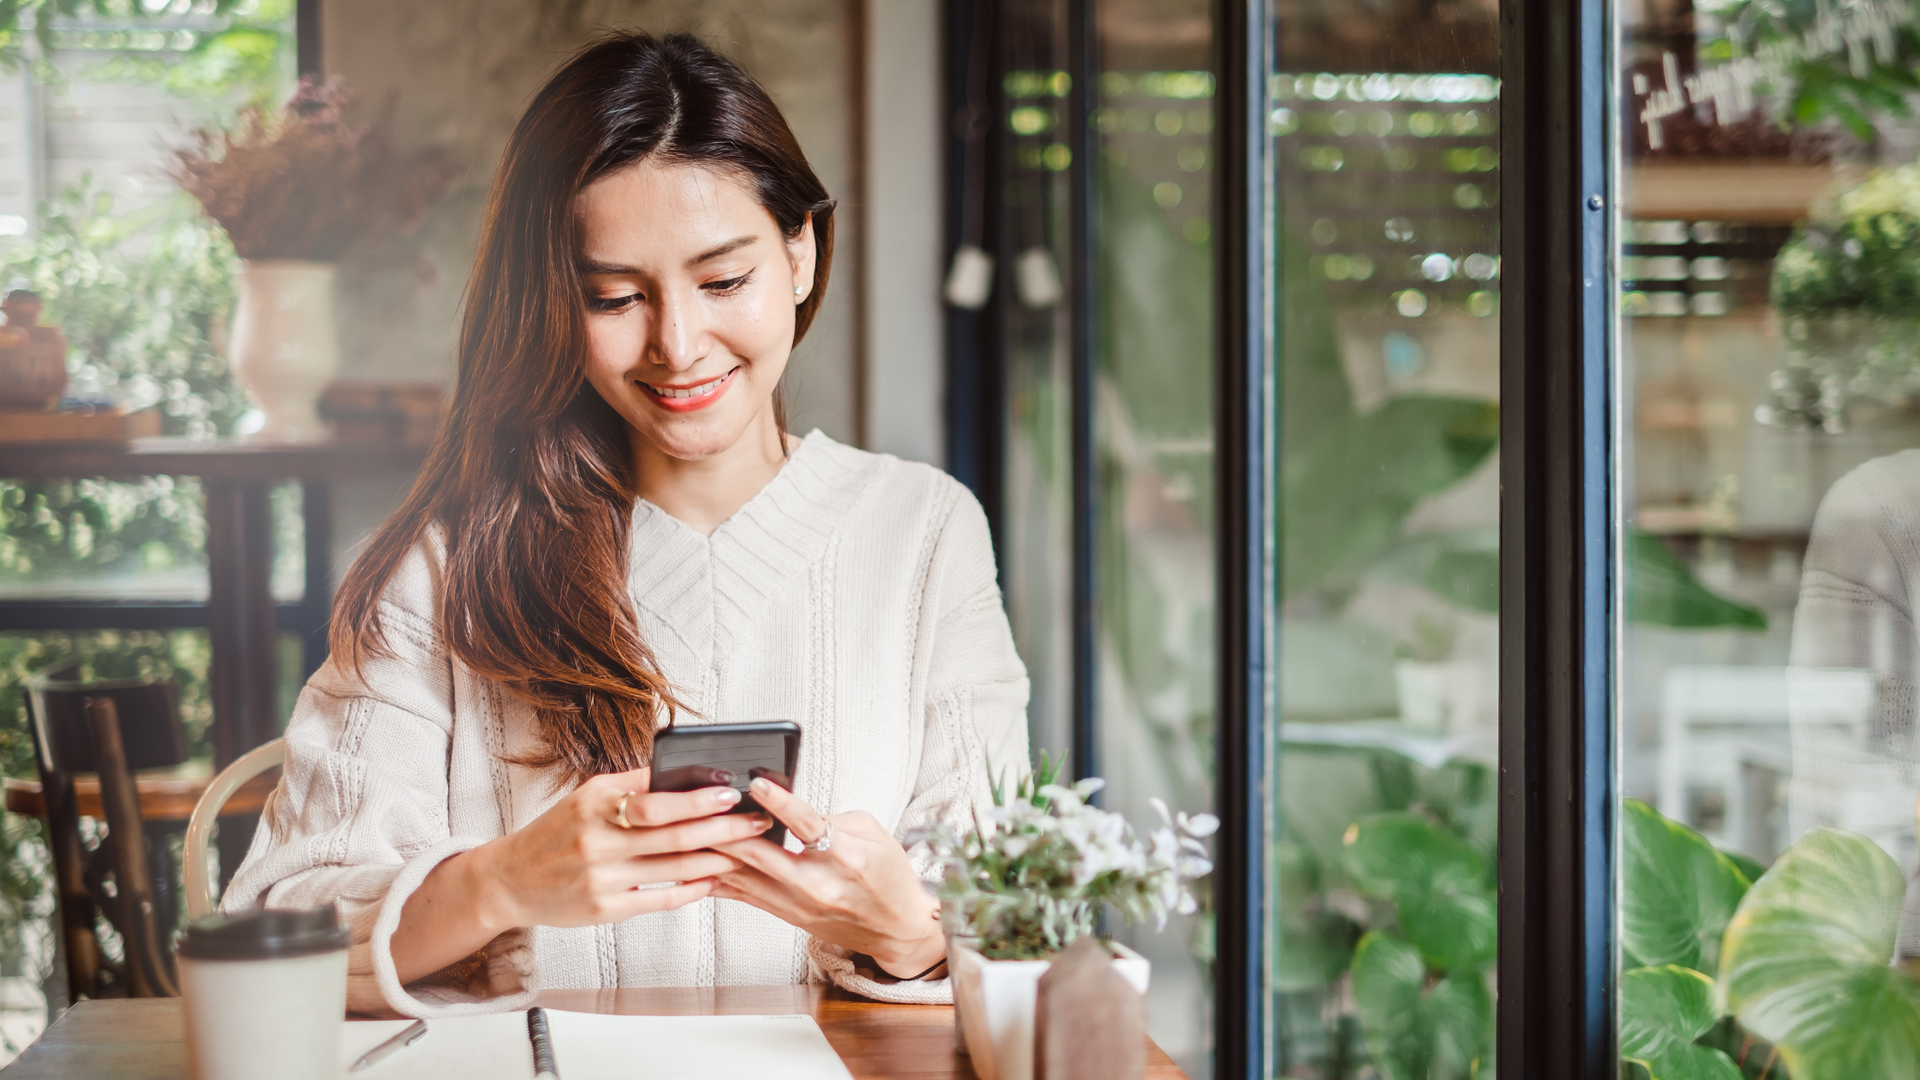 Uma boa conexão com a internet é essencial para que você faça o melhor uso possível do seu smartphone. | Foto: Shutterstock